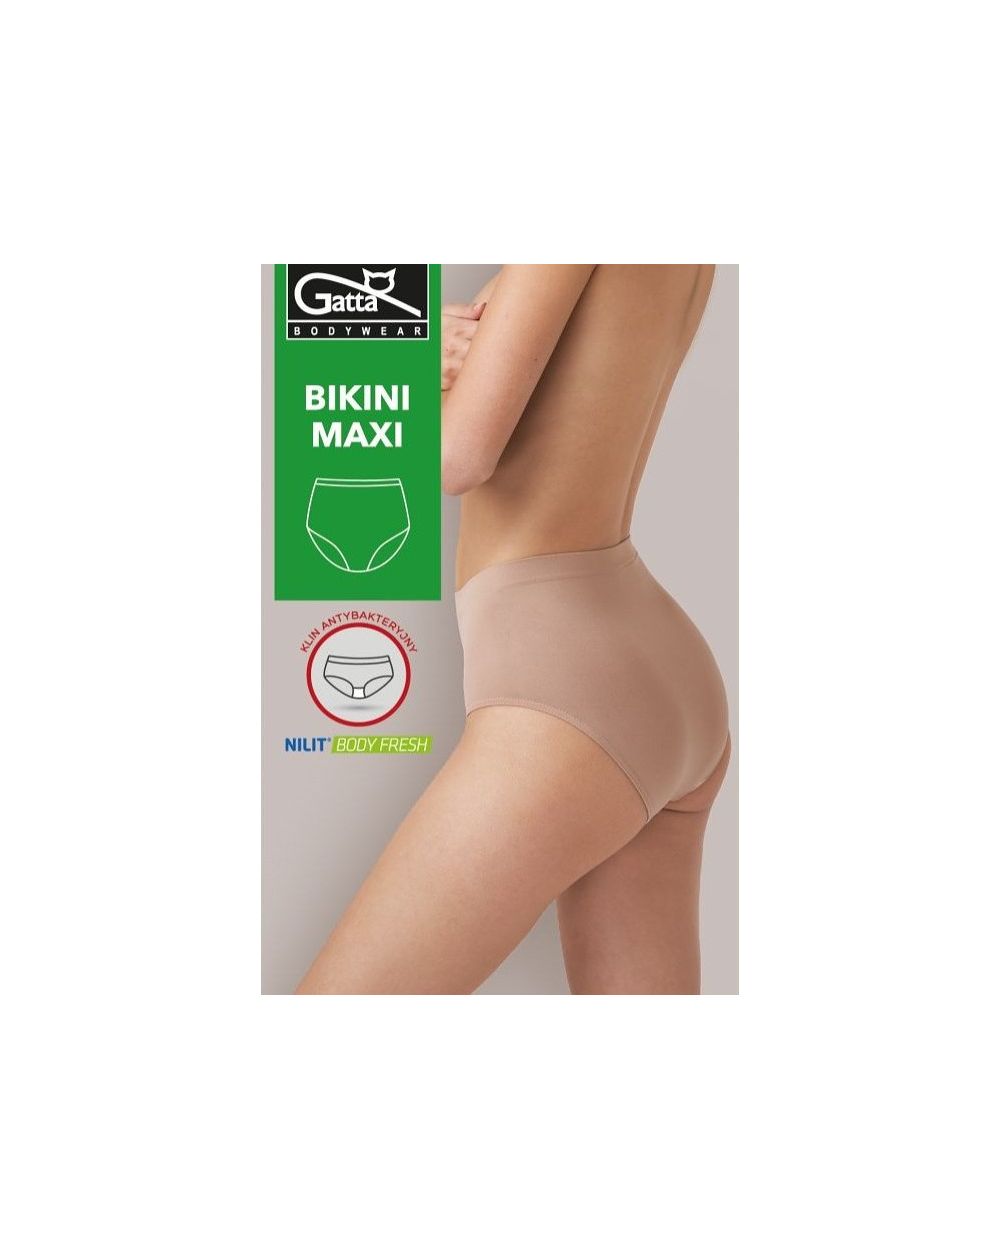 Figi Gatta 41052 Bikini Maxi